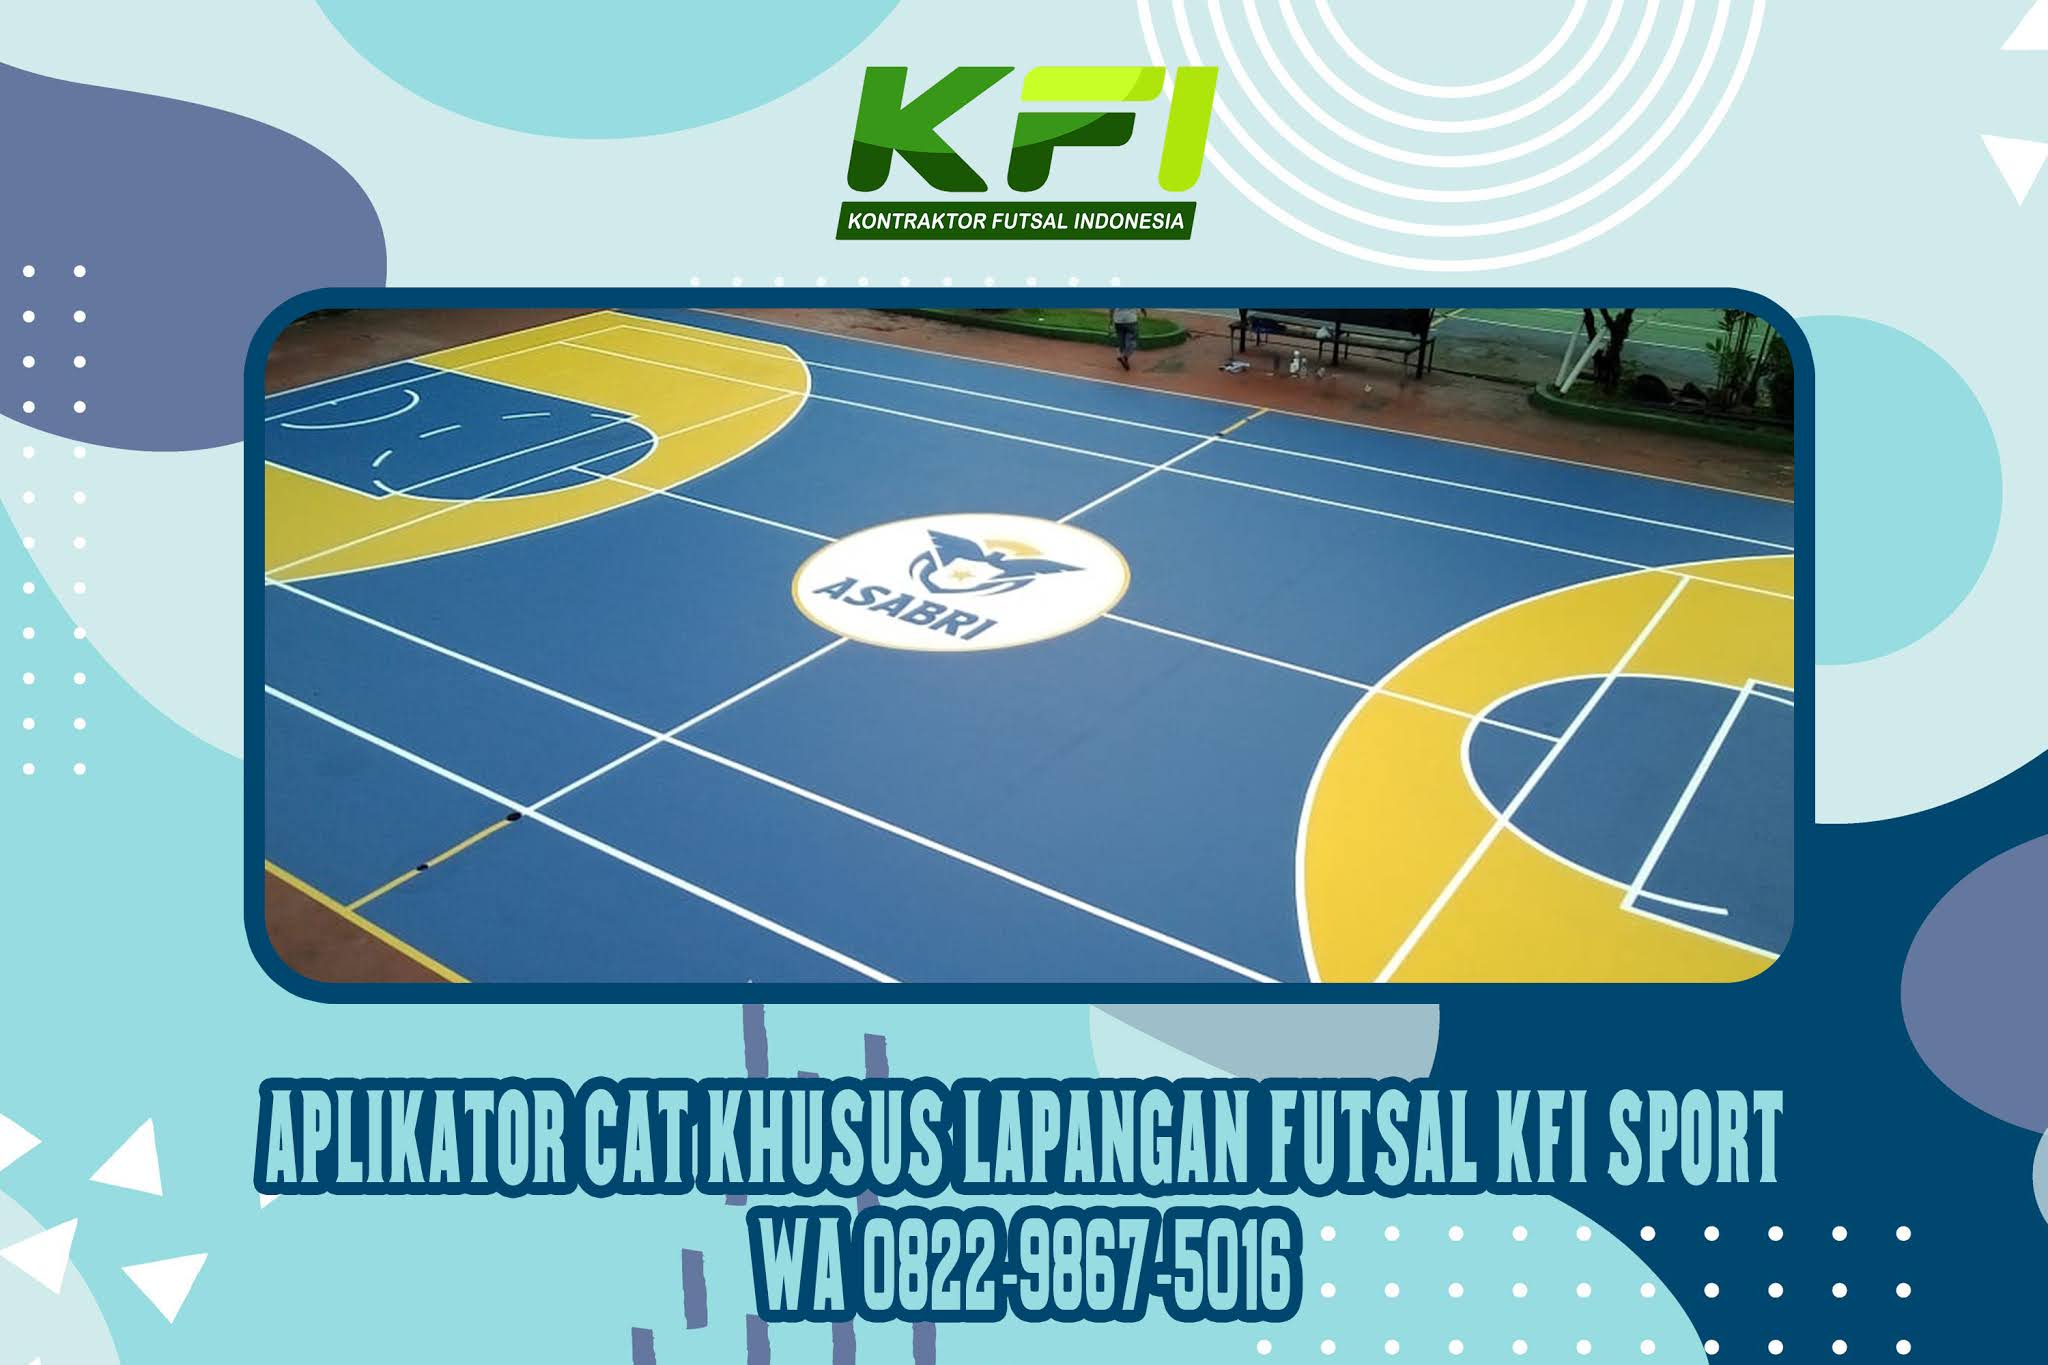 Aplikator Cat Khusus Lapangan Futsal